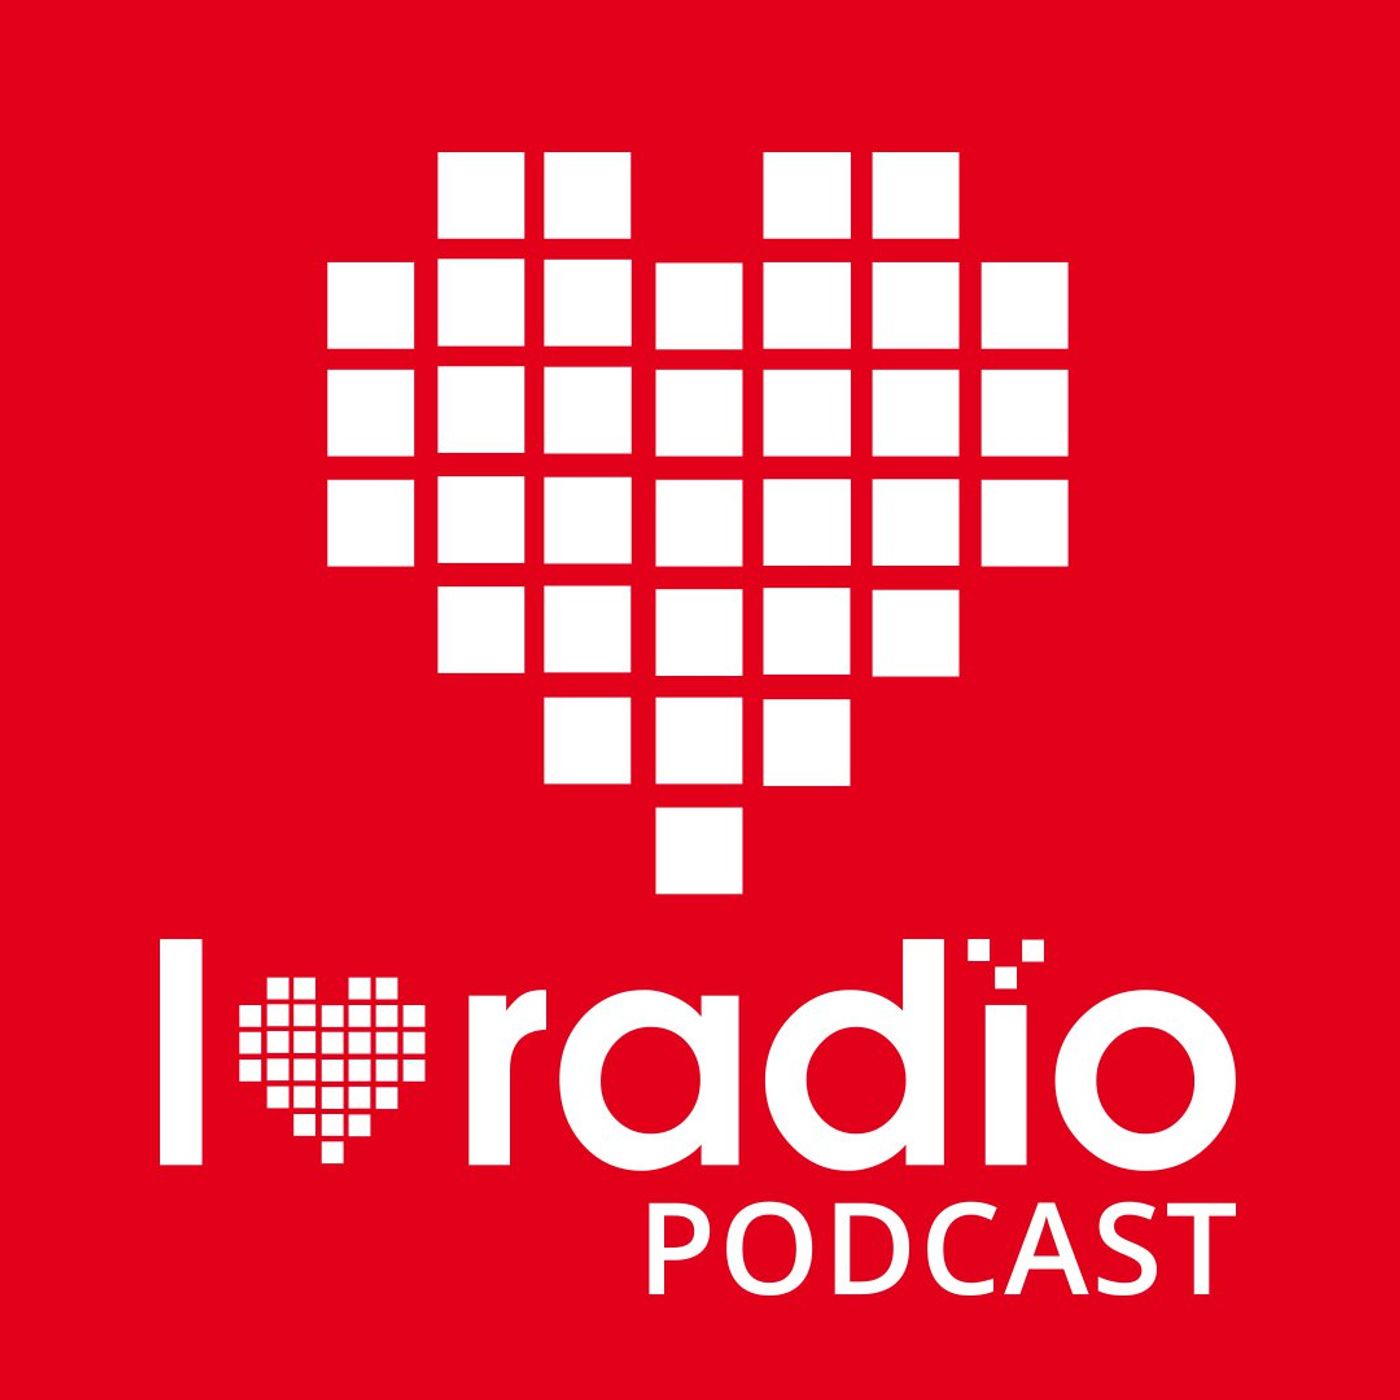 ILR12 - Prasówka I Love Radio - 03.2021 - wydarzenia na rynku radiowym w marcu 2021